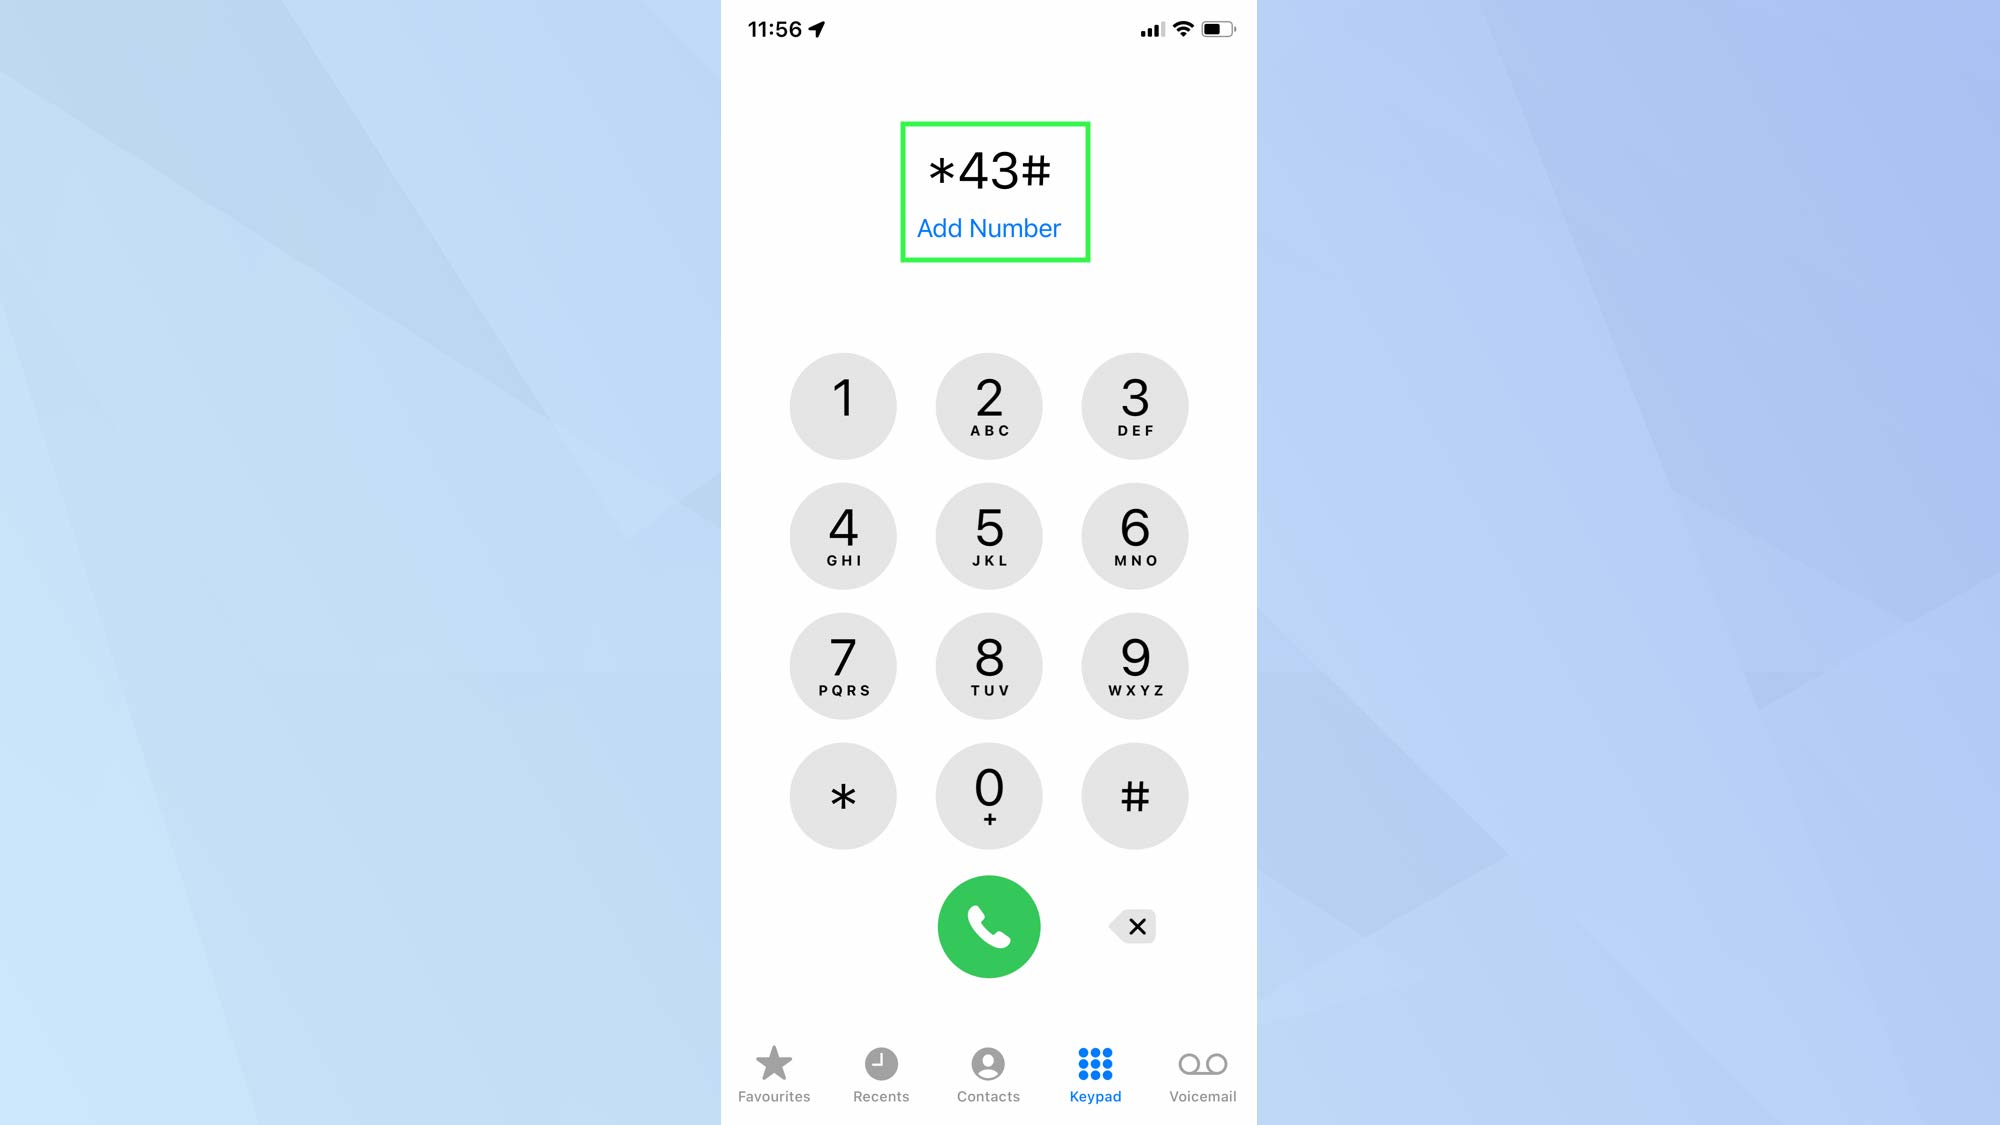 Снимок экрана с iPhone, показывающий приложение для телефона с кодами для ожидания вызова